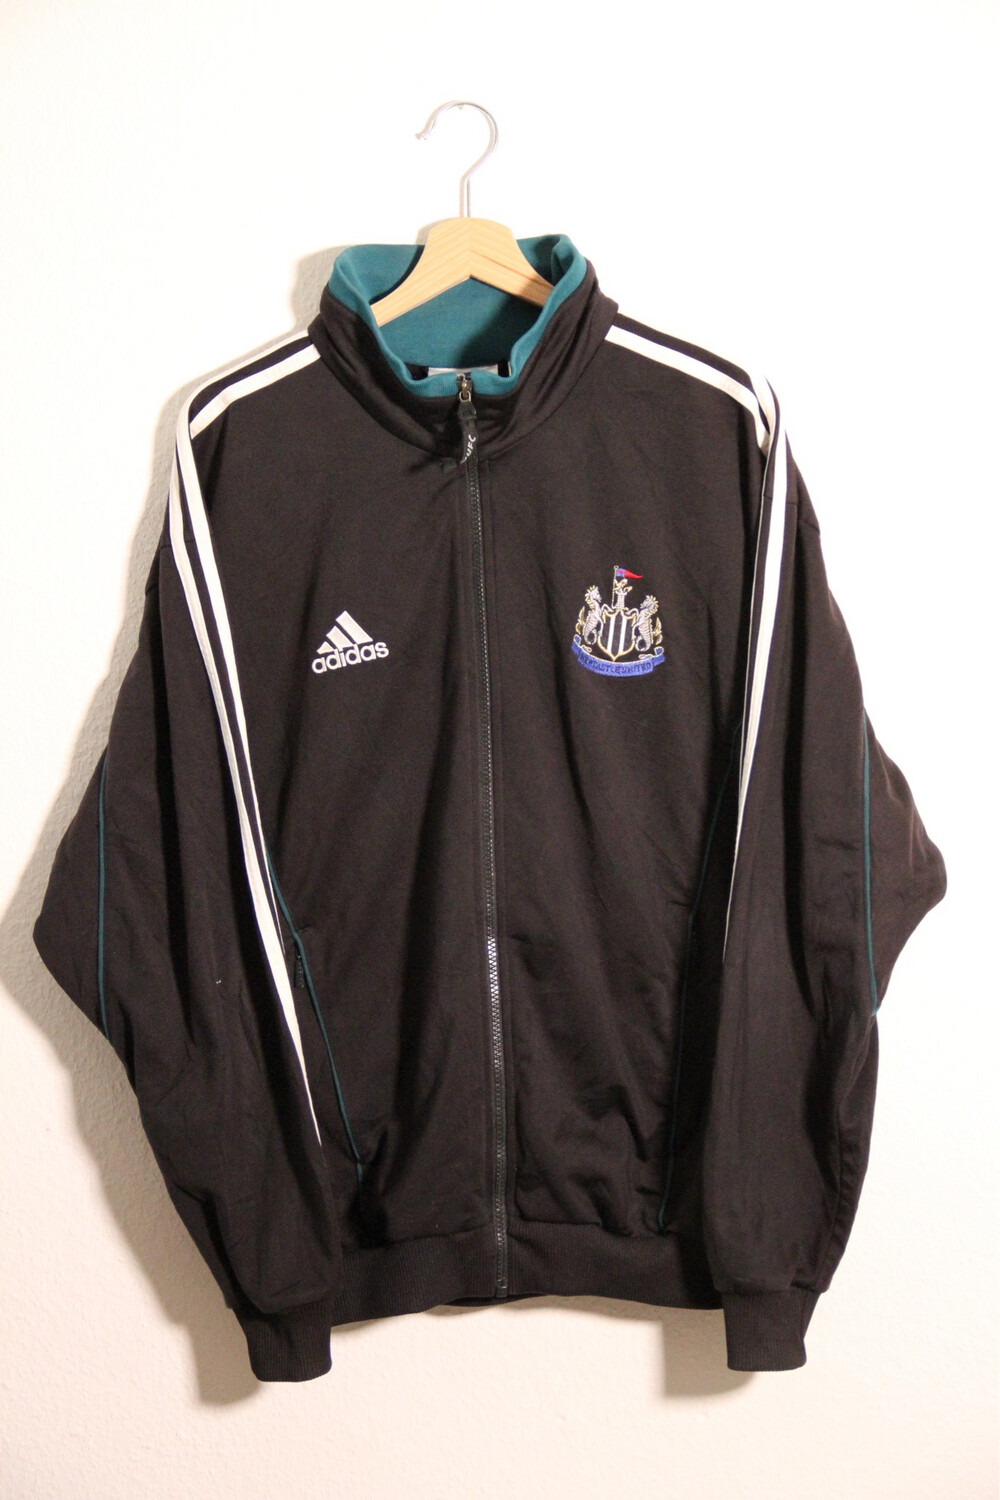 Newcastle United 1999/00 Training Jacket